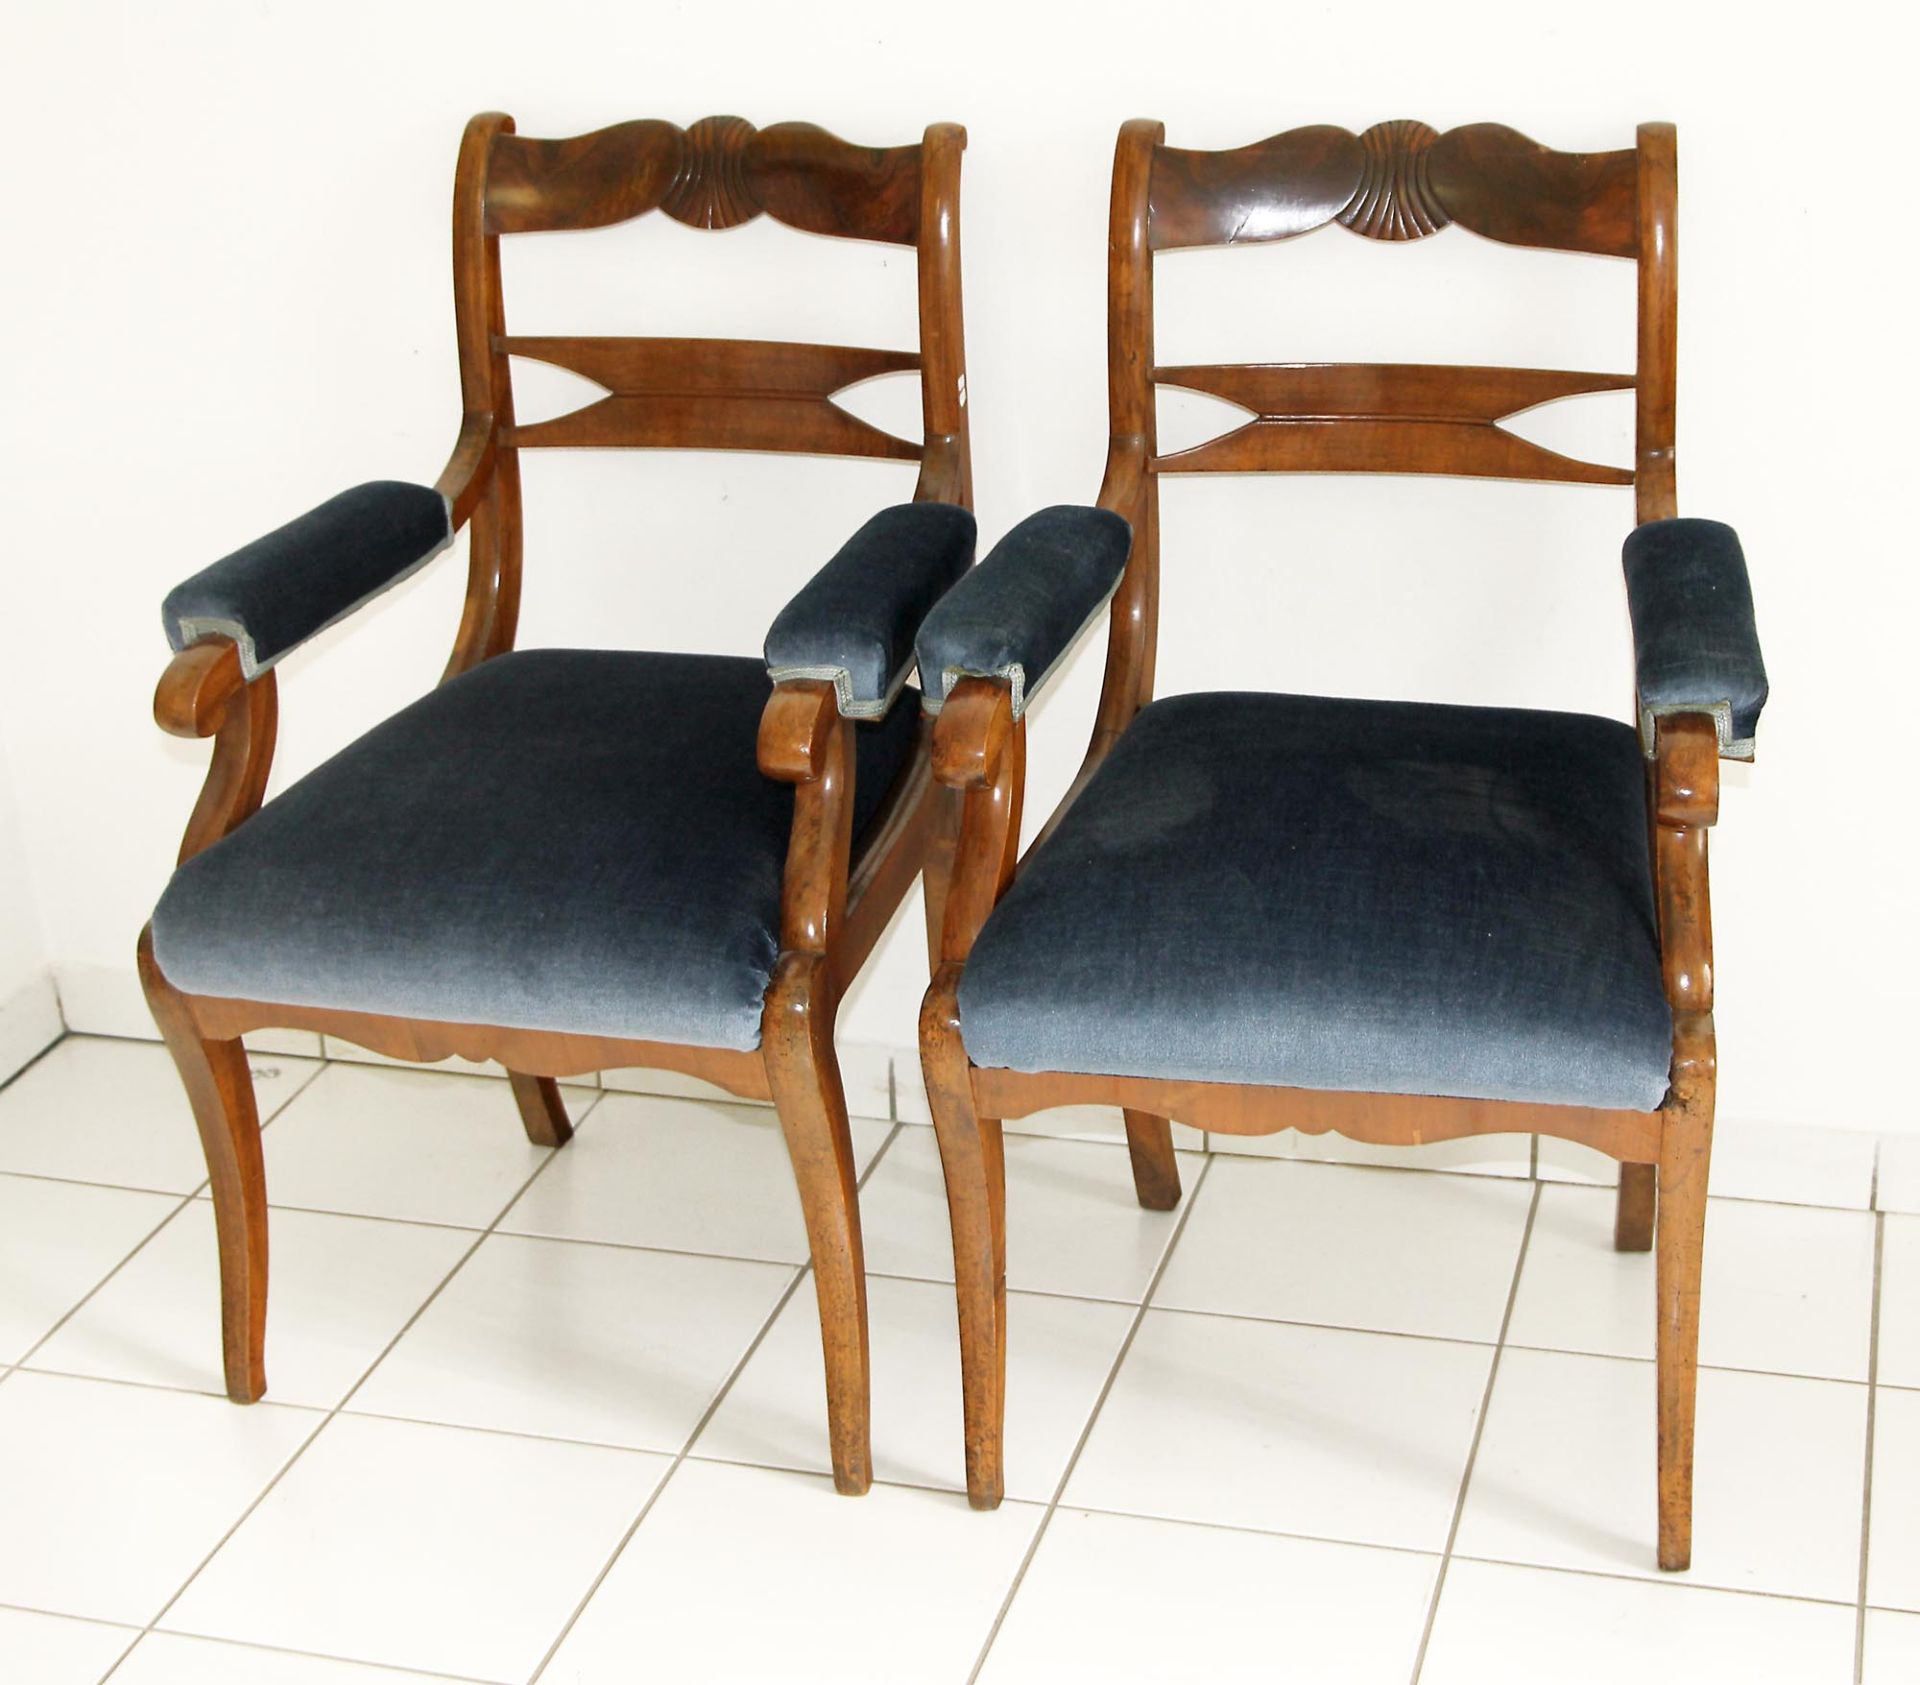 Paar Biedermeier-ArmlehnsesselNussholz massiv, Polster auf Sitz und Armlehne, Rückenlehne mit zwei